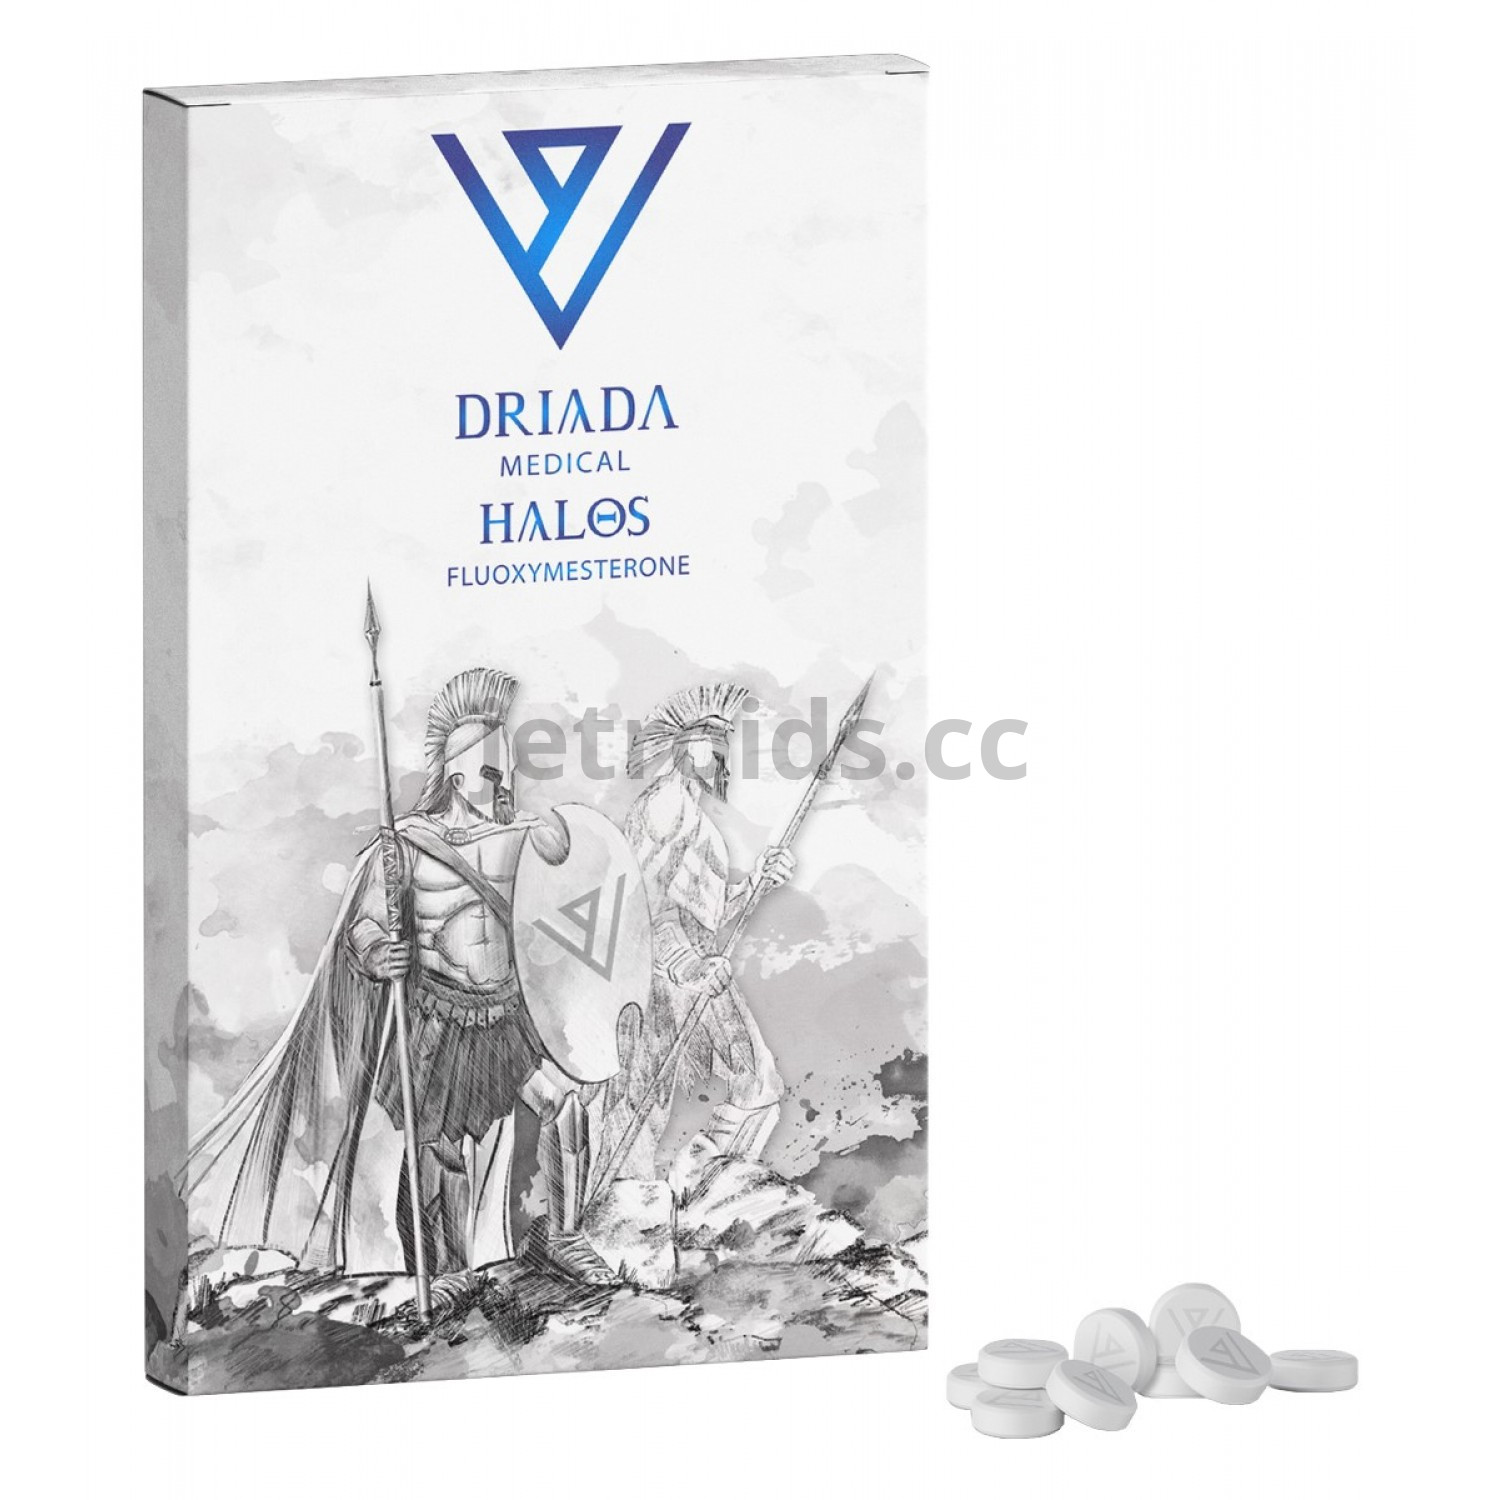 Driada Medical Halos 5 mg (Fluoxymesterone) Product Info